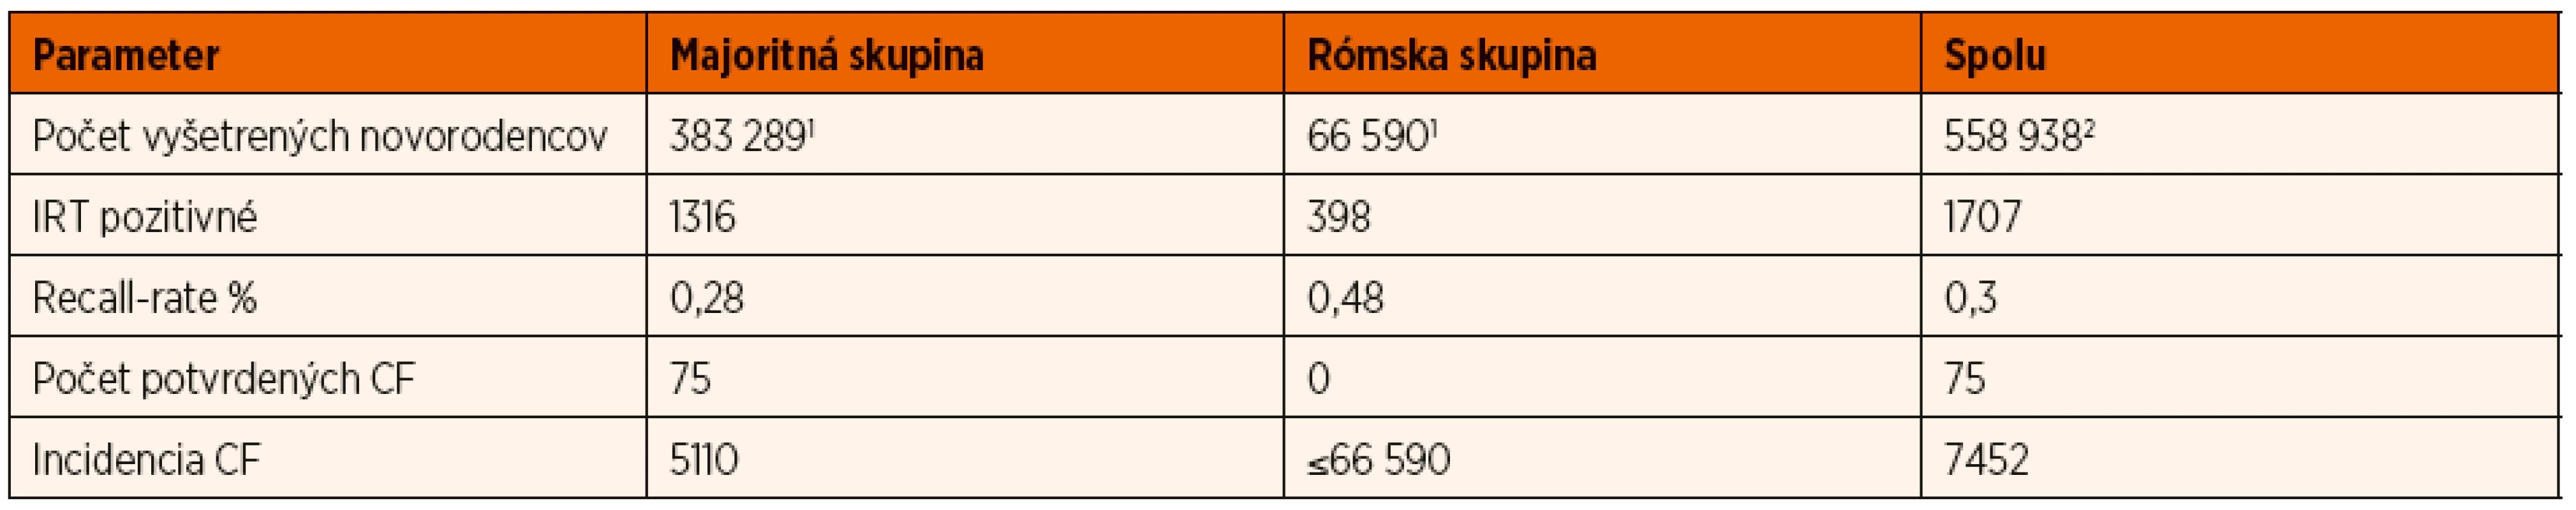 Sumárne výsledky etnického novorodeneckého skríningu cystickej fibrózy v rokoch 2009–2018 na Slovensku.